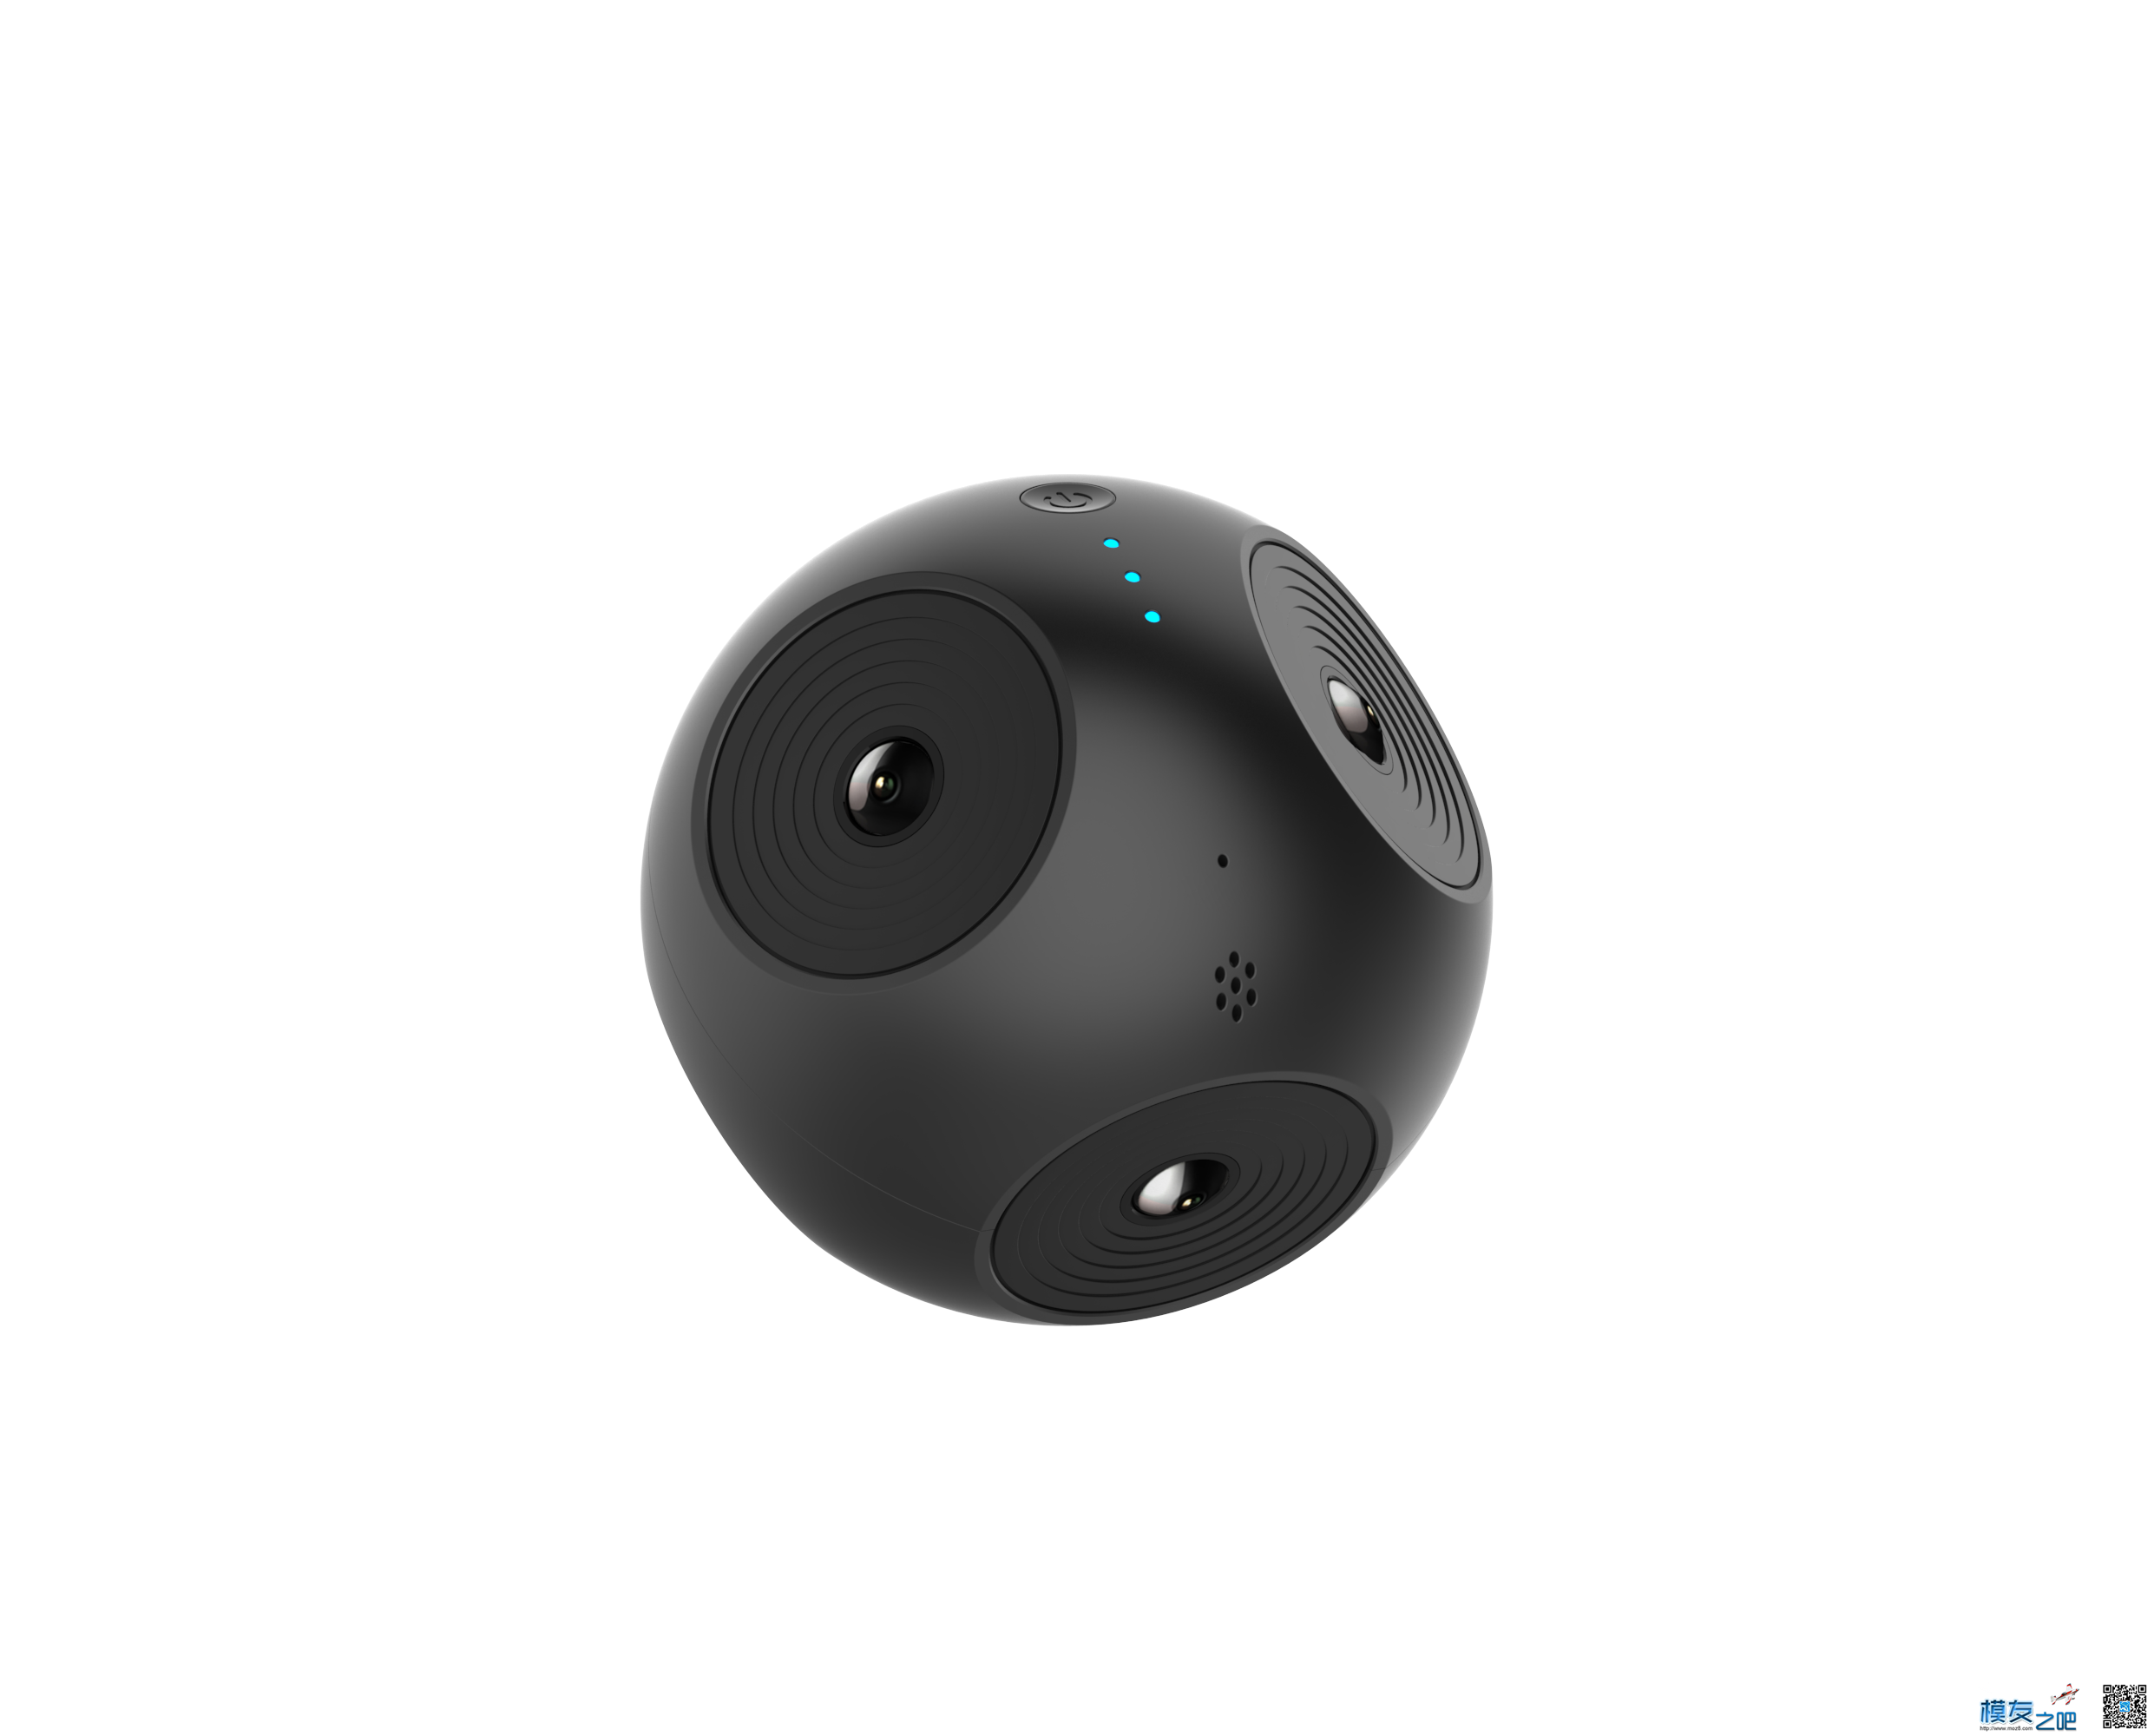 发现个实用的VR相机推荐给大家 相机 作者:AIbluecapf 5785 